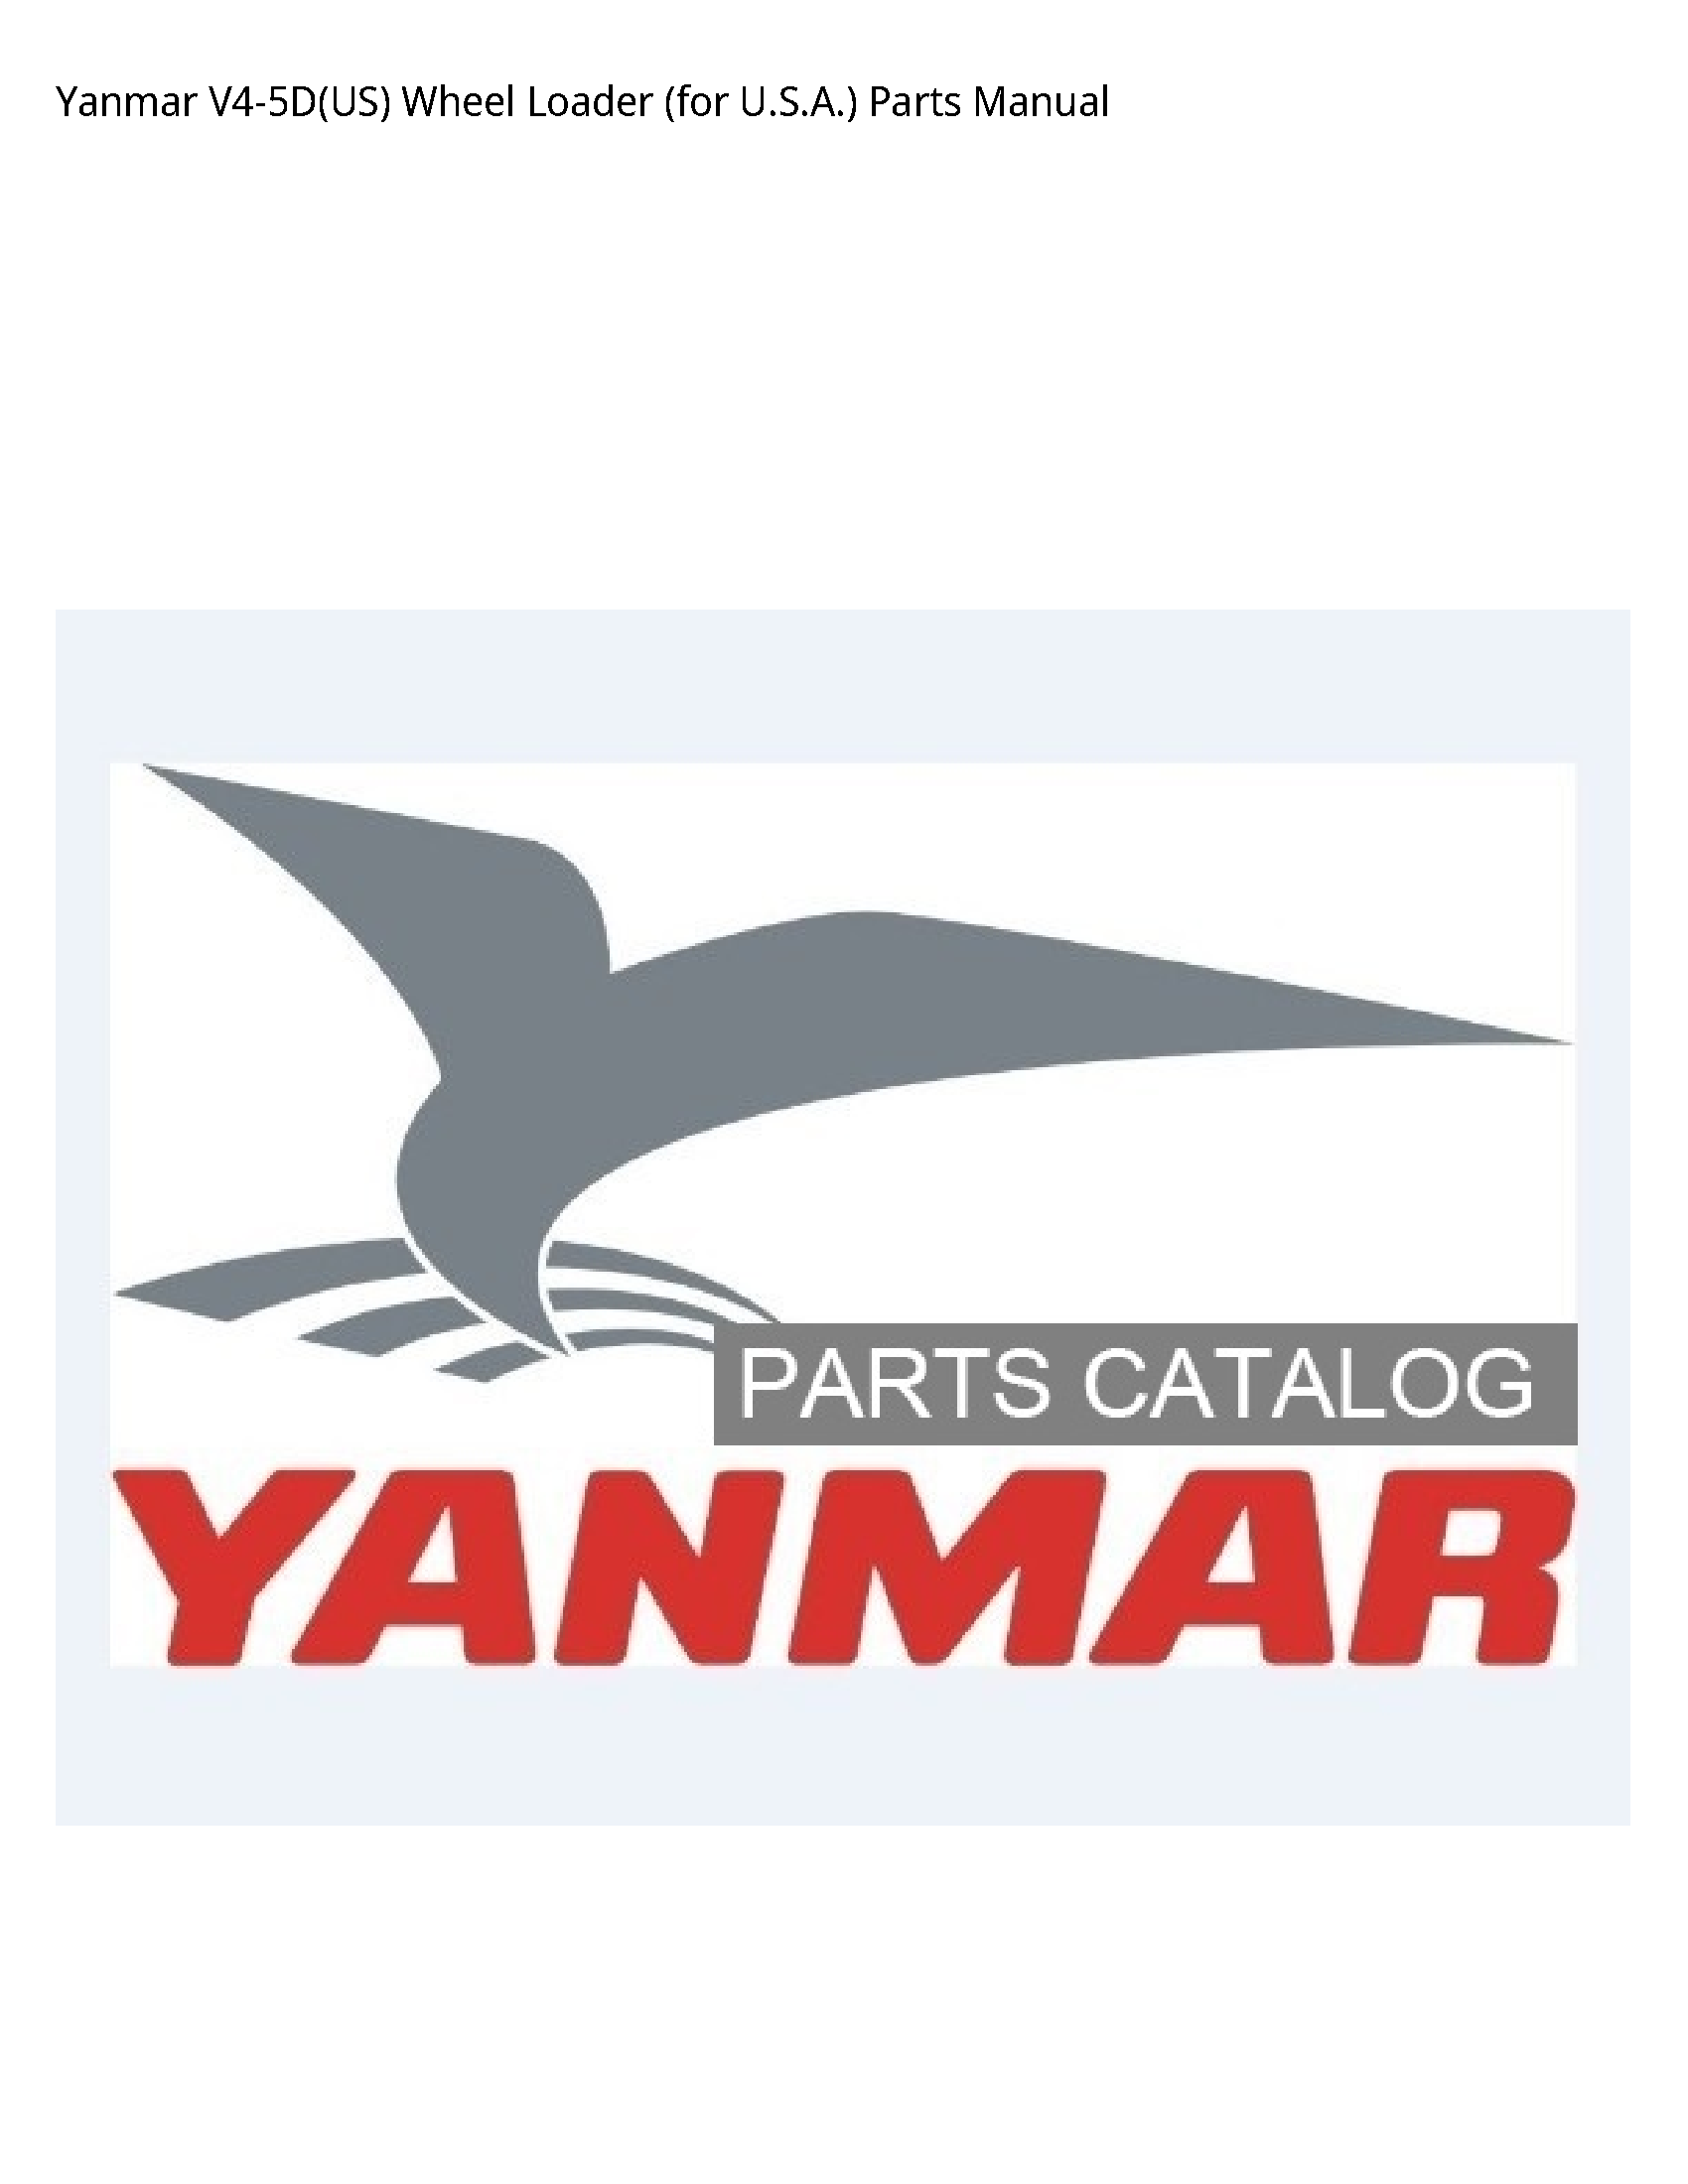 Yanmar V4-5D(US) Wheel Loader (for U.S.A.) Parts manual